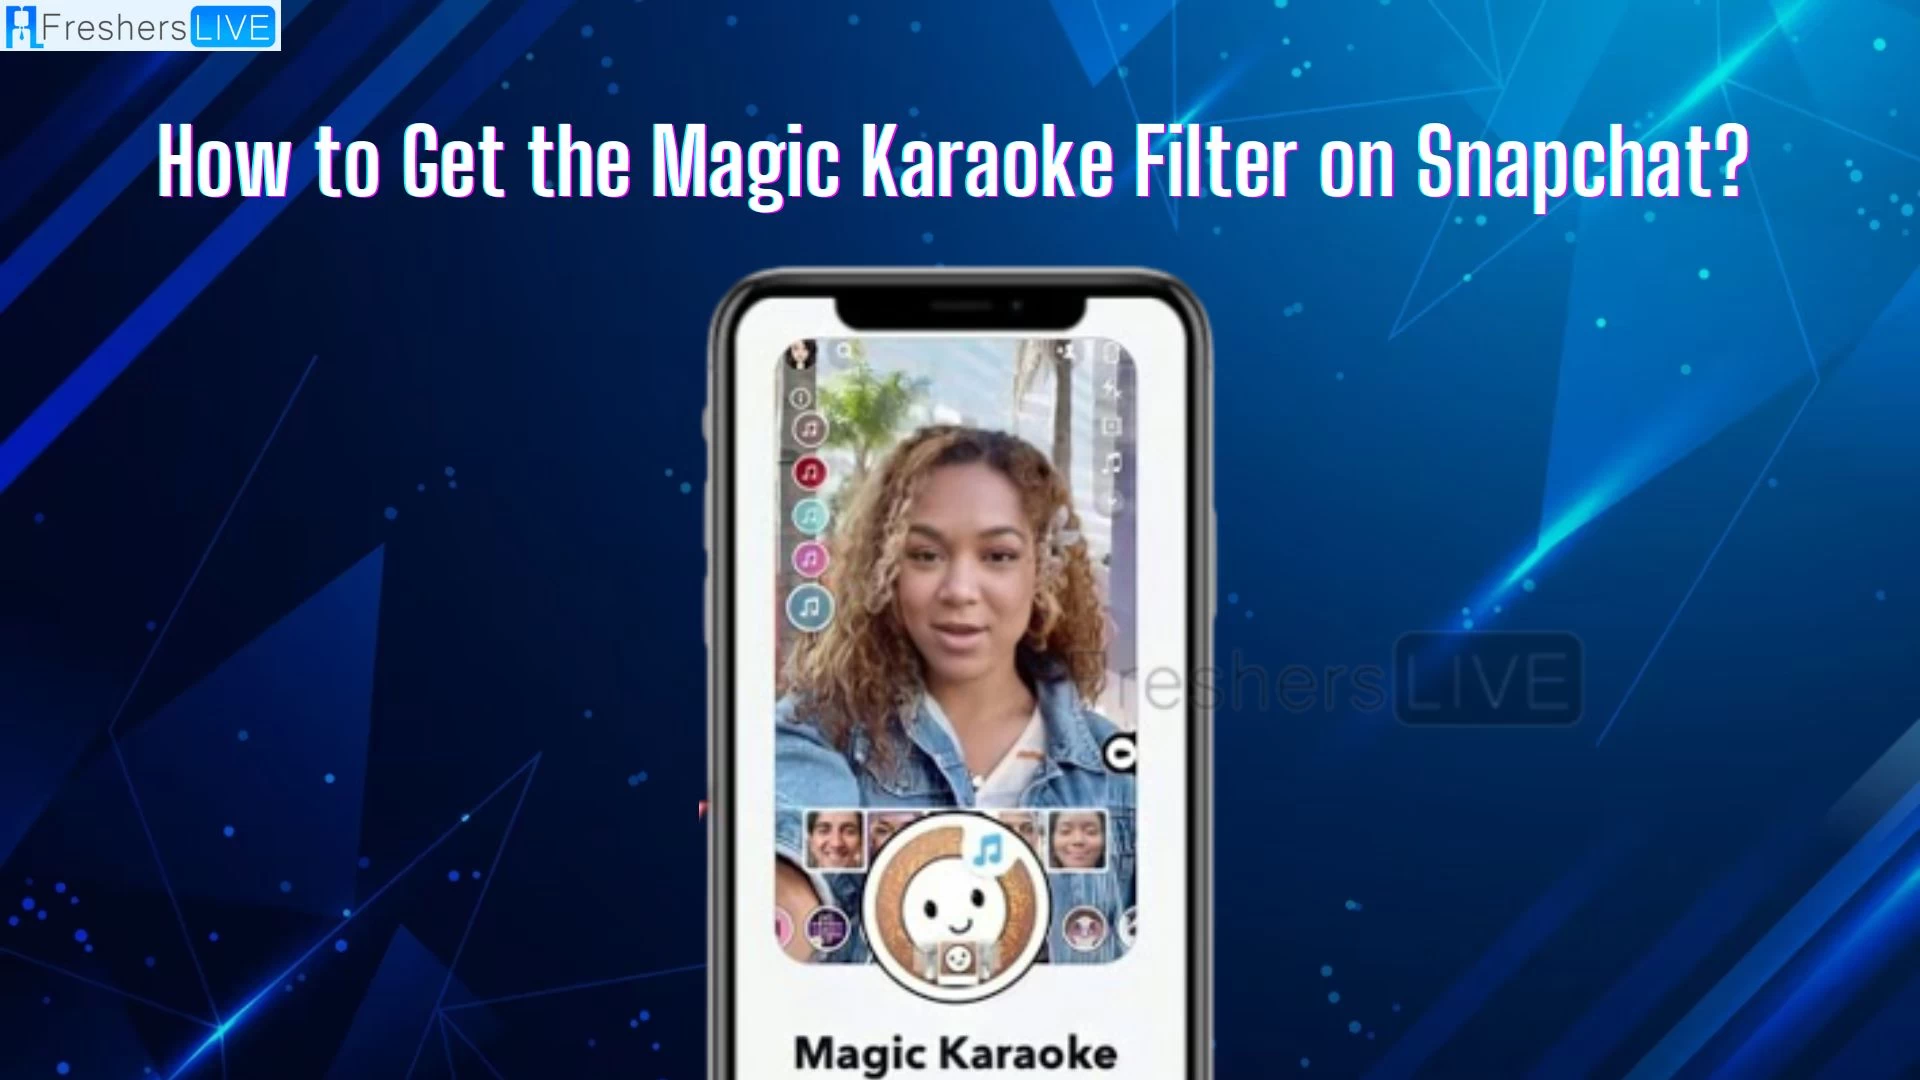 Filtro de Snapchat que hace cantar las imágenes, ¿cómo conseguir el filtro mágico de Karaoke en Snapchat?